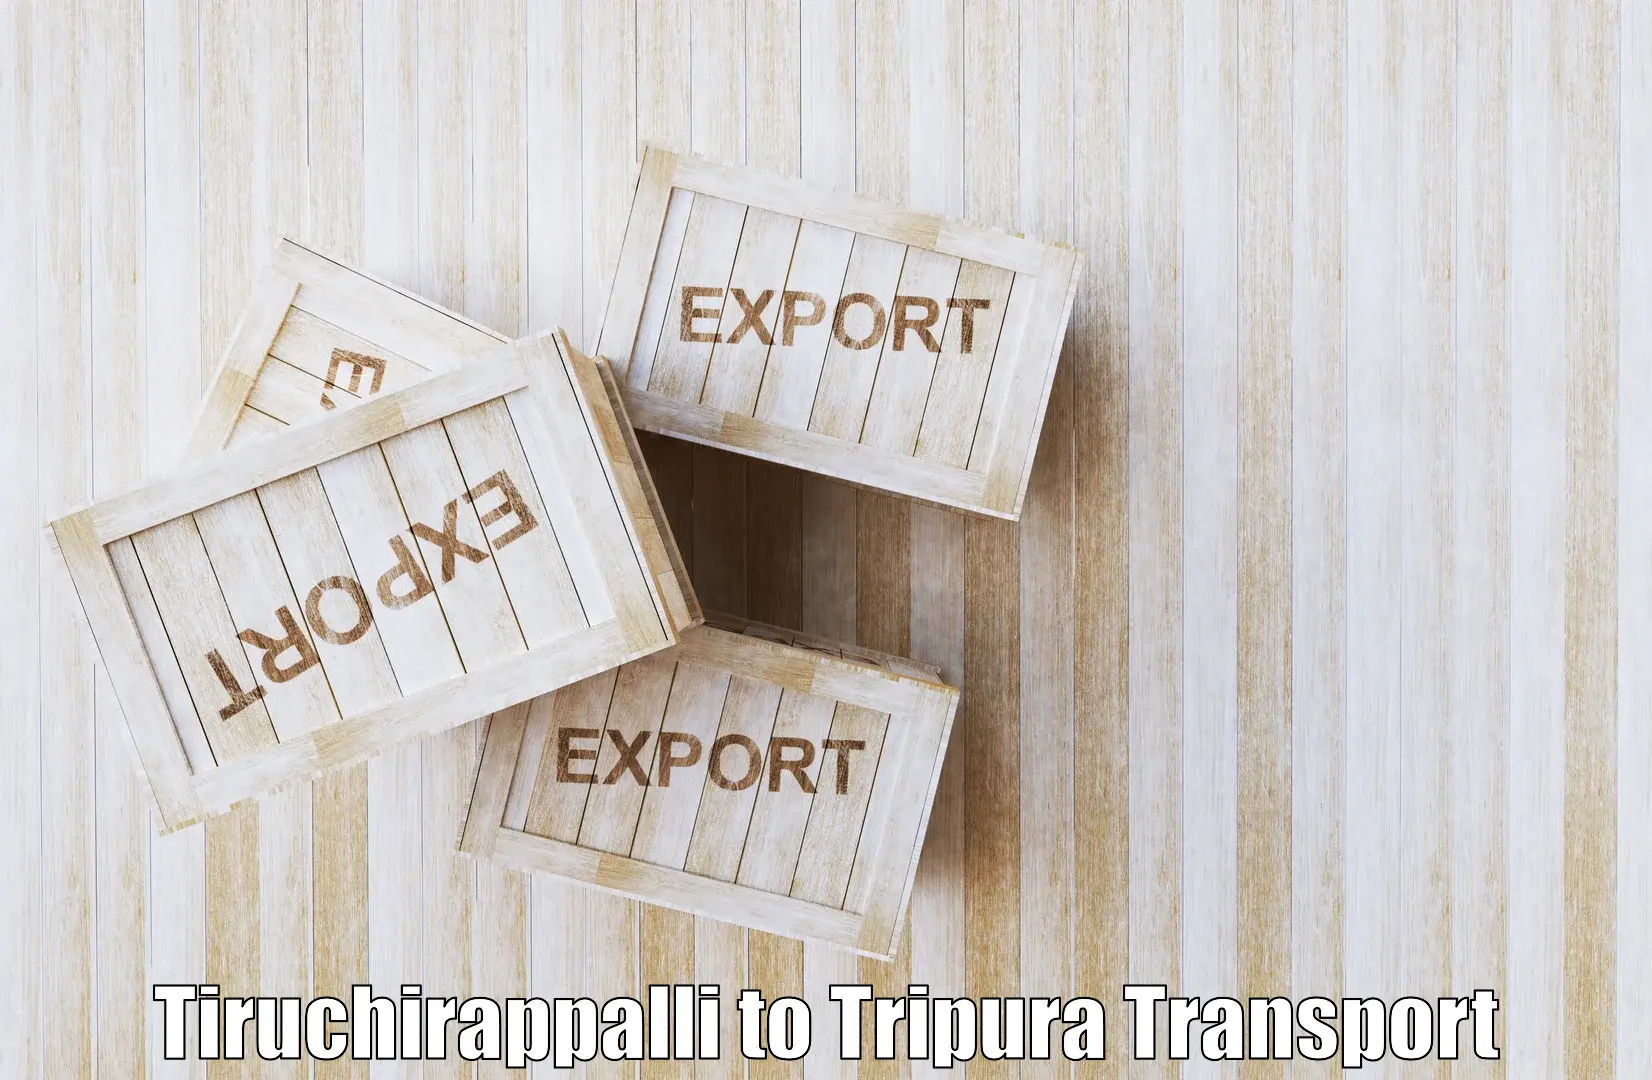 Cargo train transport services Tiruchirappalli to Manughat